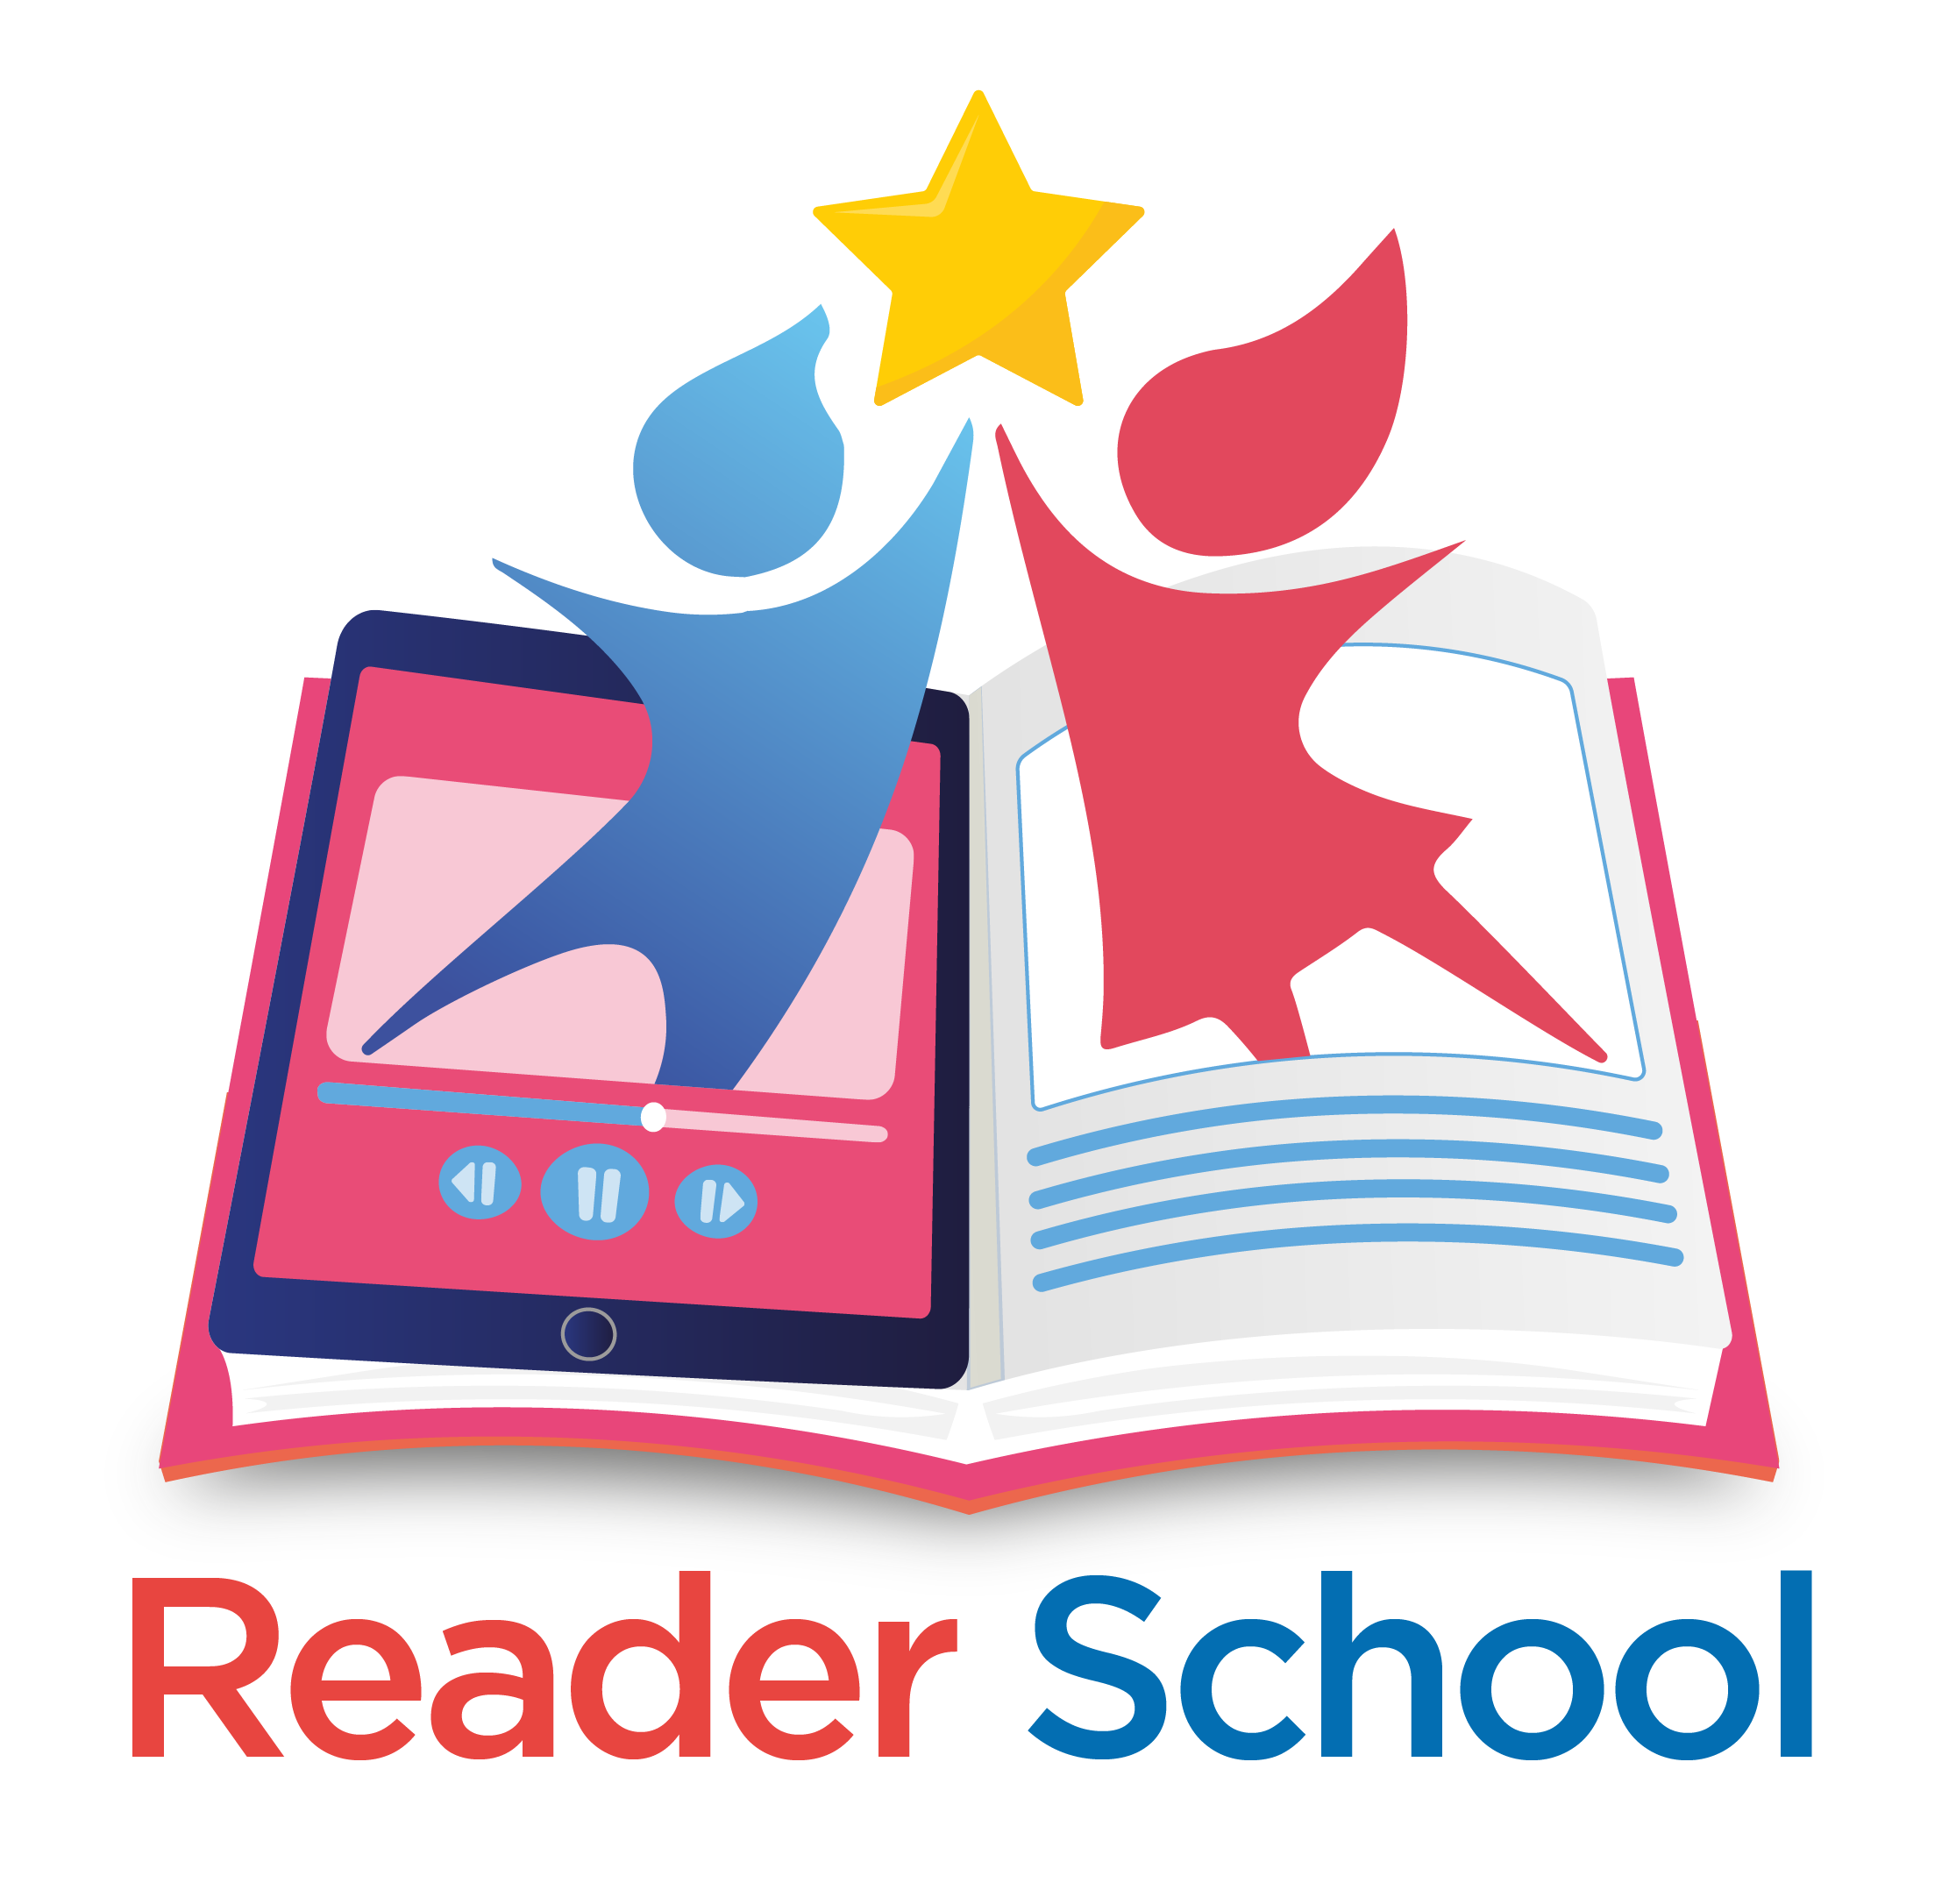 Readers School